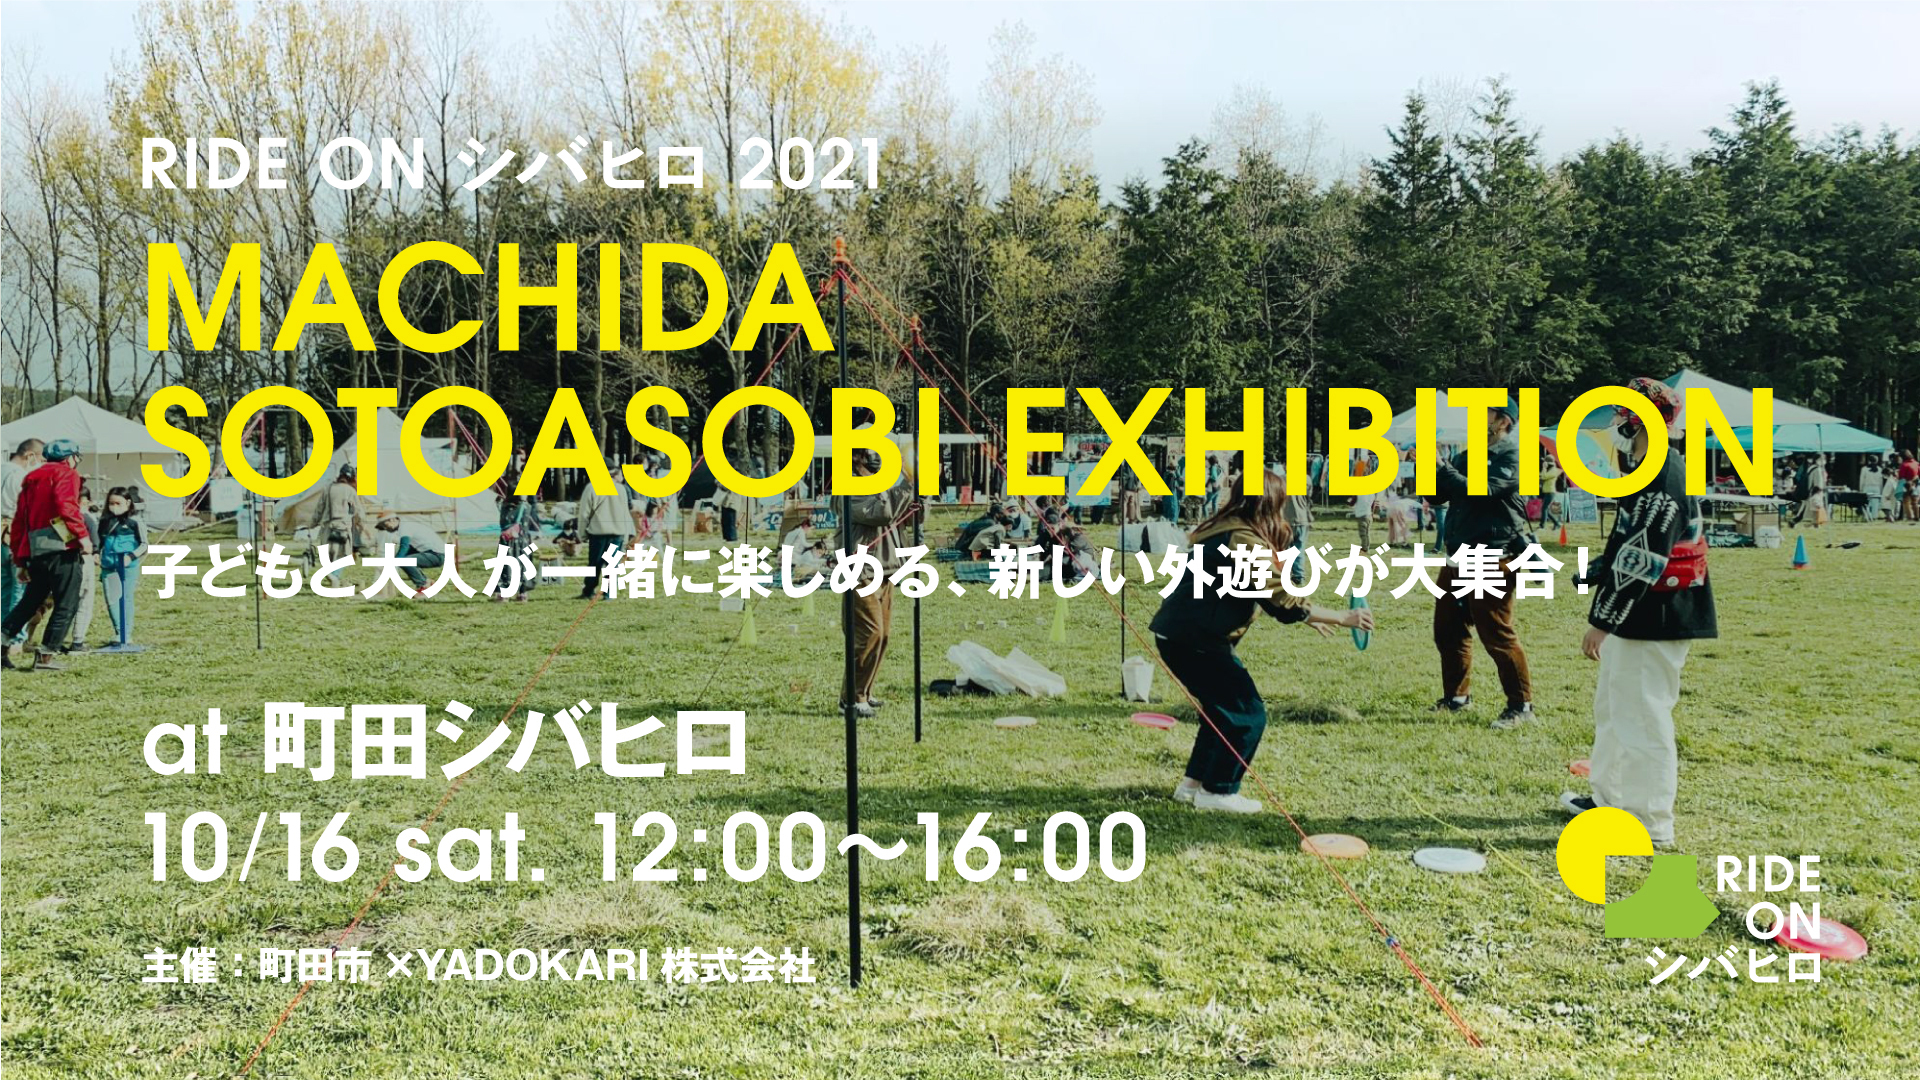 Machida Sotoasobi Exhibition 子どもと大人が一緒に楽しめる 新しい外遊びが大集合 Yadokari Net 小屋 タイニーハウス 空き家 移住 コンテナハウスからこれからの暮らしを考え実践するメディア